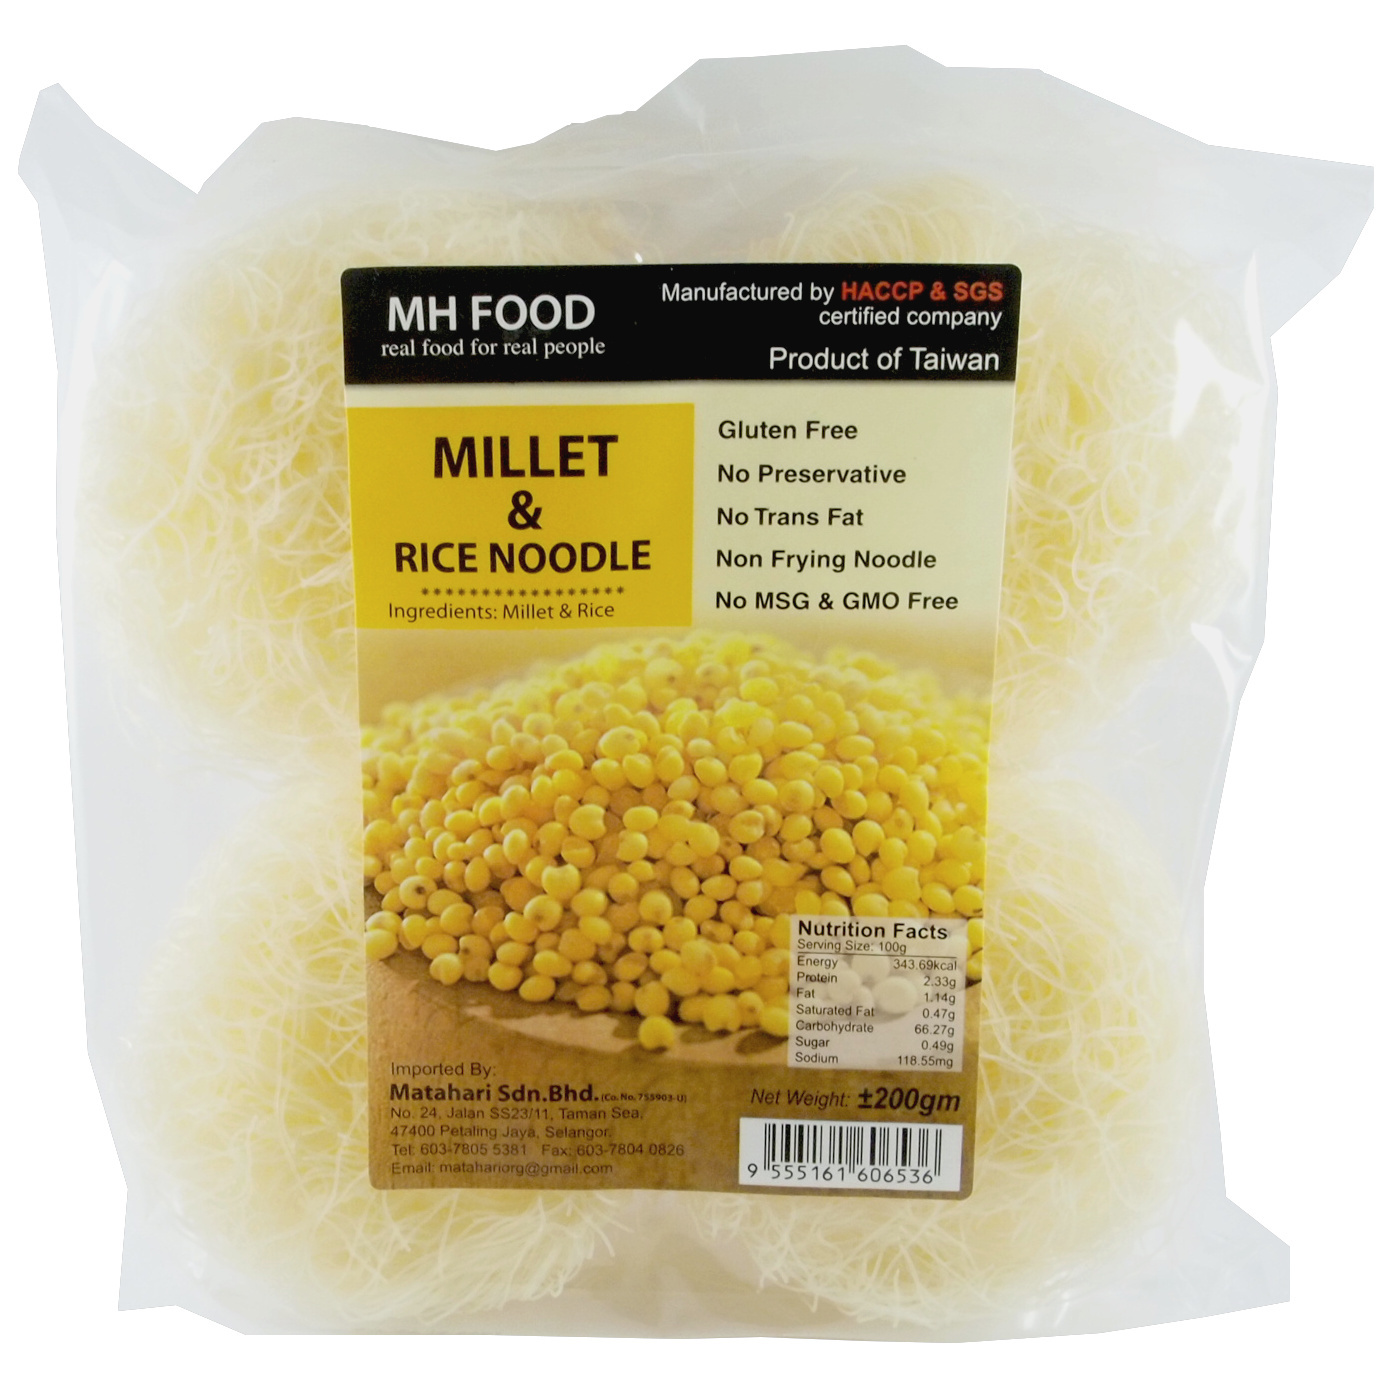 MH FOOD Millet & Rice Noodle.JPG